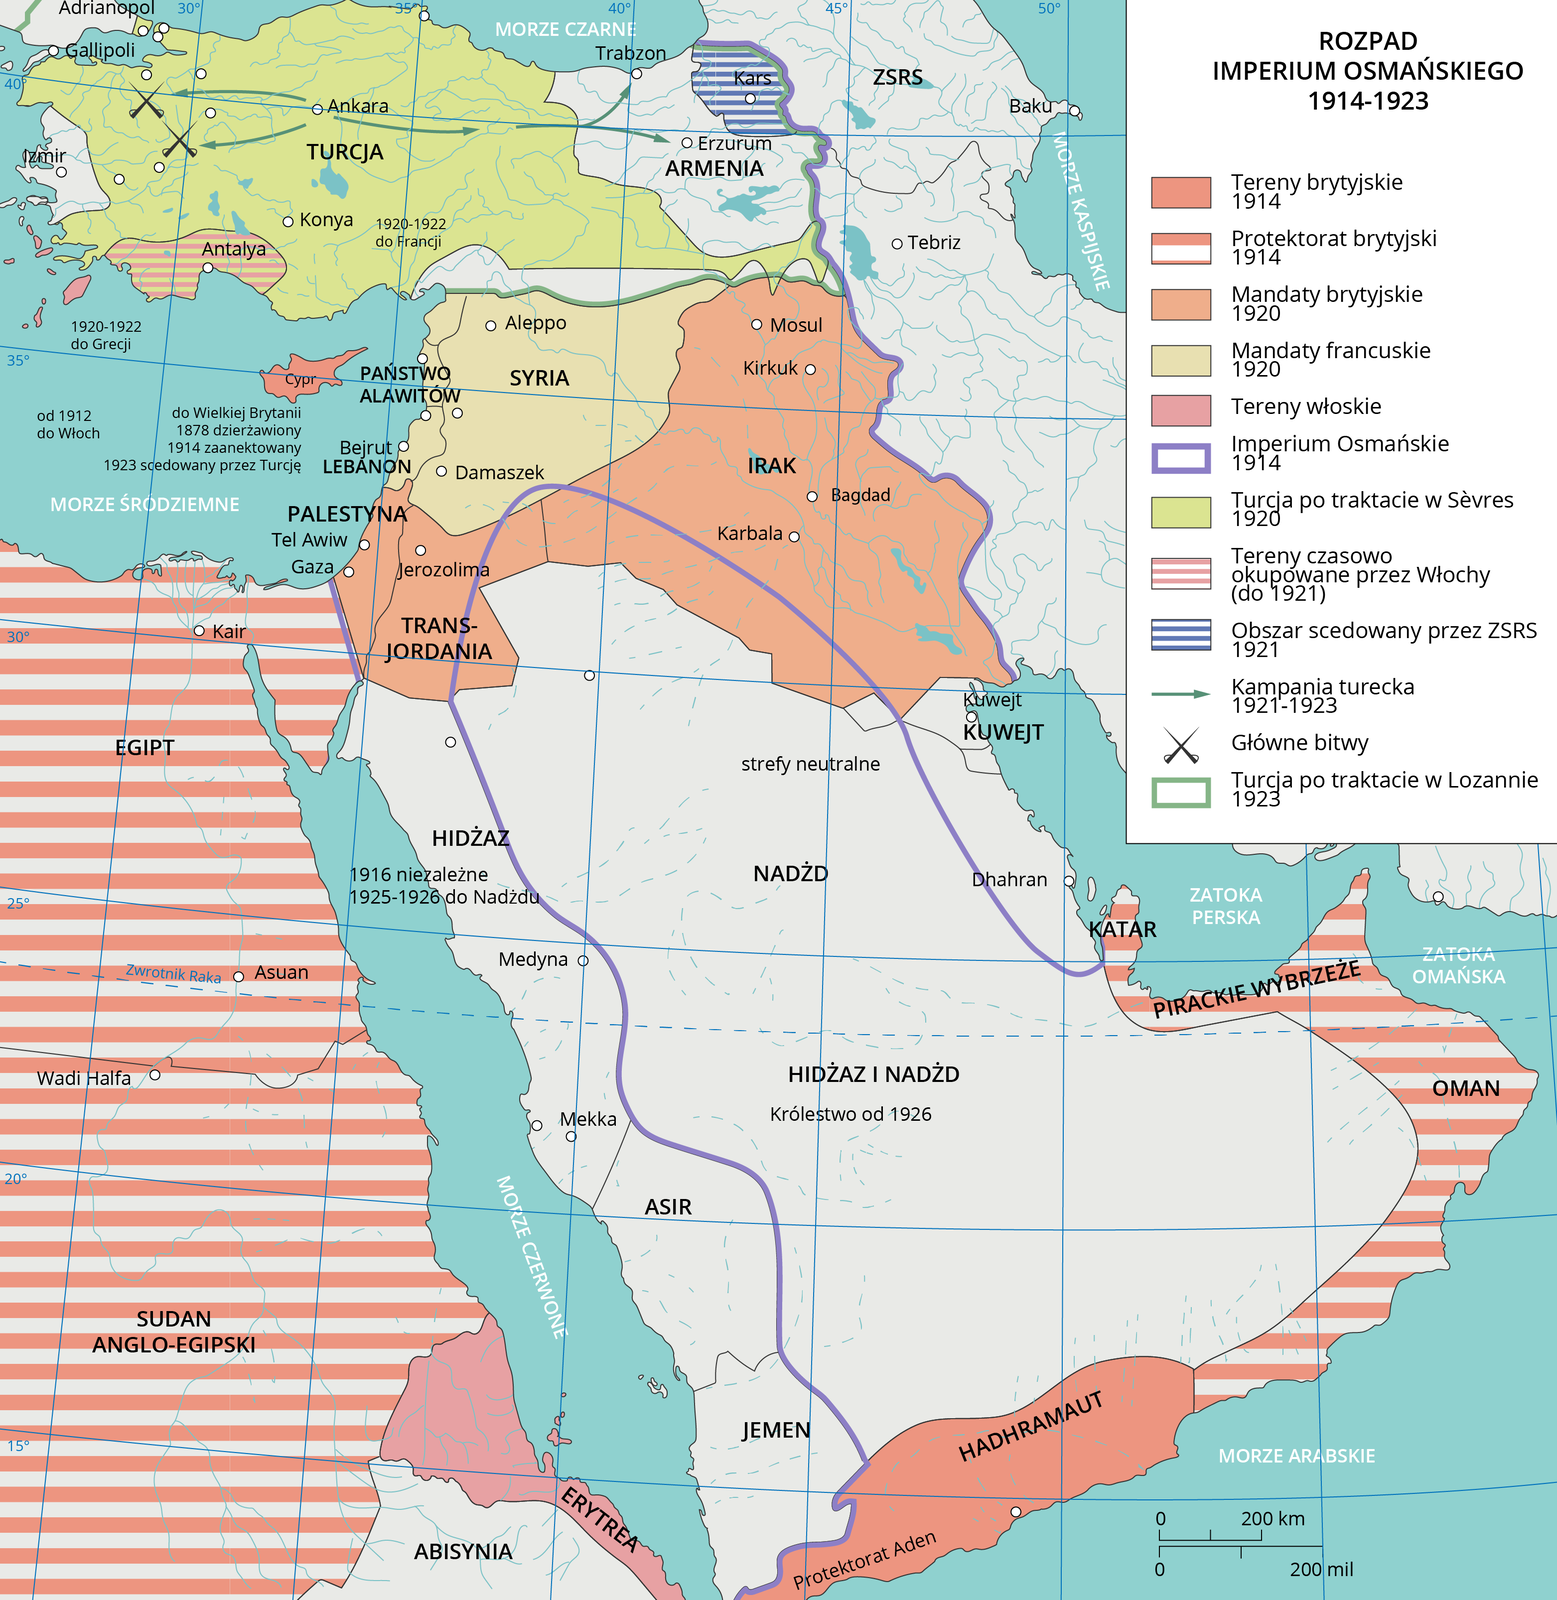 Ilustracja przedstawia rozpad Imperium Osmańskiego w 1914- 1923 roku. Tereny brytyjskie z 1914 znajdowały się na terenie obecnego Jemenu. Protektorat brytyjski 1914 rok północno – wschodnia cześć Afryki i wschodnia część Arabii Saudyjskiej, Oman i Pirackie Wybrzeże z miastem Katar. Miejsce nadania mandatów brytyjskich w 1920 roku na terenie obecnego Iraku i Jordanii. Mandaty francuskie w 1920 rok teren Syrii. Miejsce terenów Włoskich to Erytrea po wschodniej stronie Afryki. Turcja po traktacie w Sevres w 1920 roku zajmowała aktualny teren za wyjątkiem północno- wschodnie części kraju. Obszar scedowany przez ZSRS 1921 rok to obszar między Turcją i Armenią. Tereny czasowo okupowane przez Włochy do 1921 roku, to wybrzeże południa Turcji. Kampania turecka 1921- 1923 z centralnej części od miasta Ankara na zachodnie i po wschodnie krańce Turcji. Główne bitwy: Bursa i Kutahya. Imperium Osmańskie 1914 rok w linii pionowej oddziela granicę Turcji i północno- zachodniego Iranu oraz w Arabii saudyjskiej granica przebiegała w kształcie półokręgu od wschodniej strony po północ i południe. Turcja po traktacie w Lozannie 1923 roku zajmowała większy obszar niż dzisiaj bo aż po Armenię.